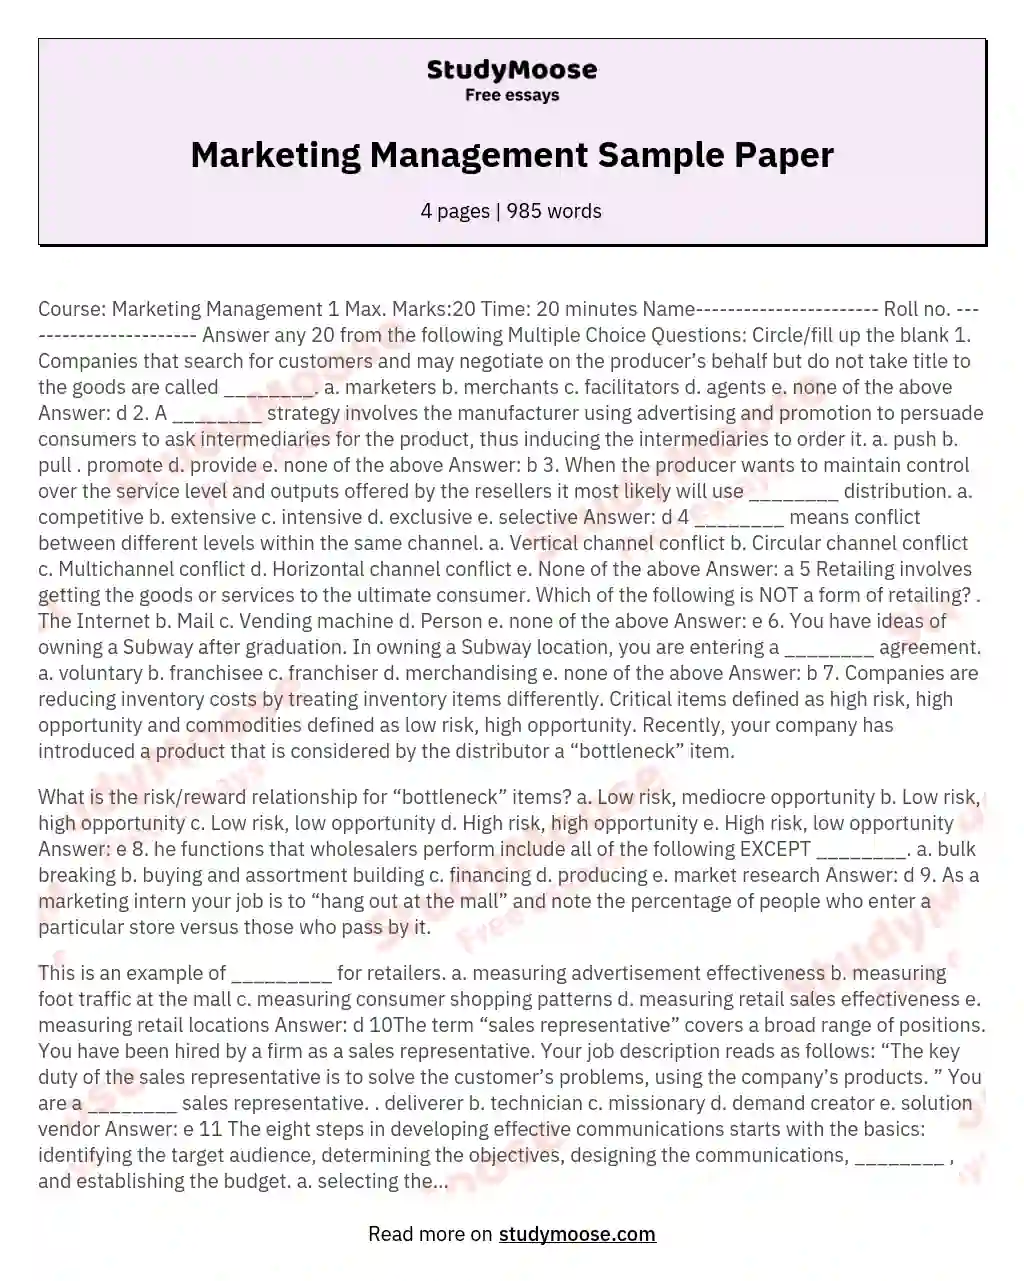 Marketing Management Sample Paper